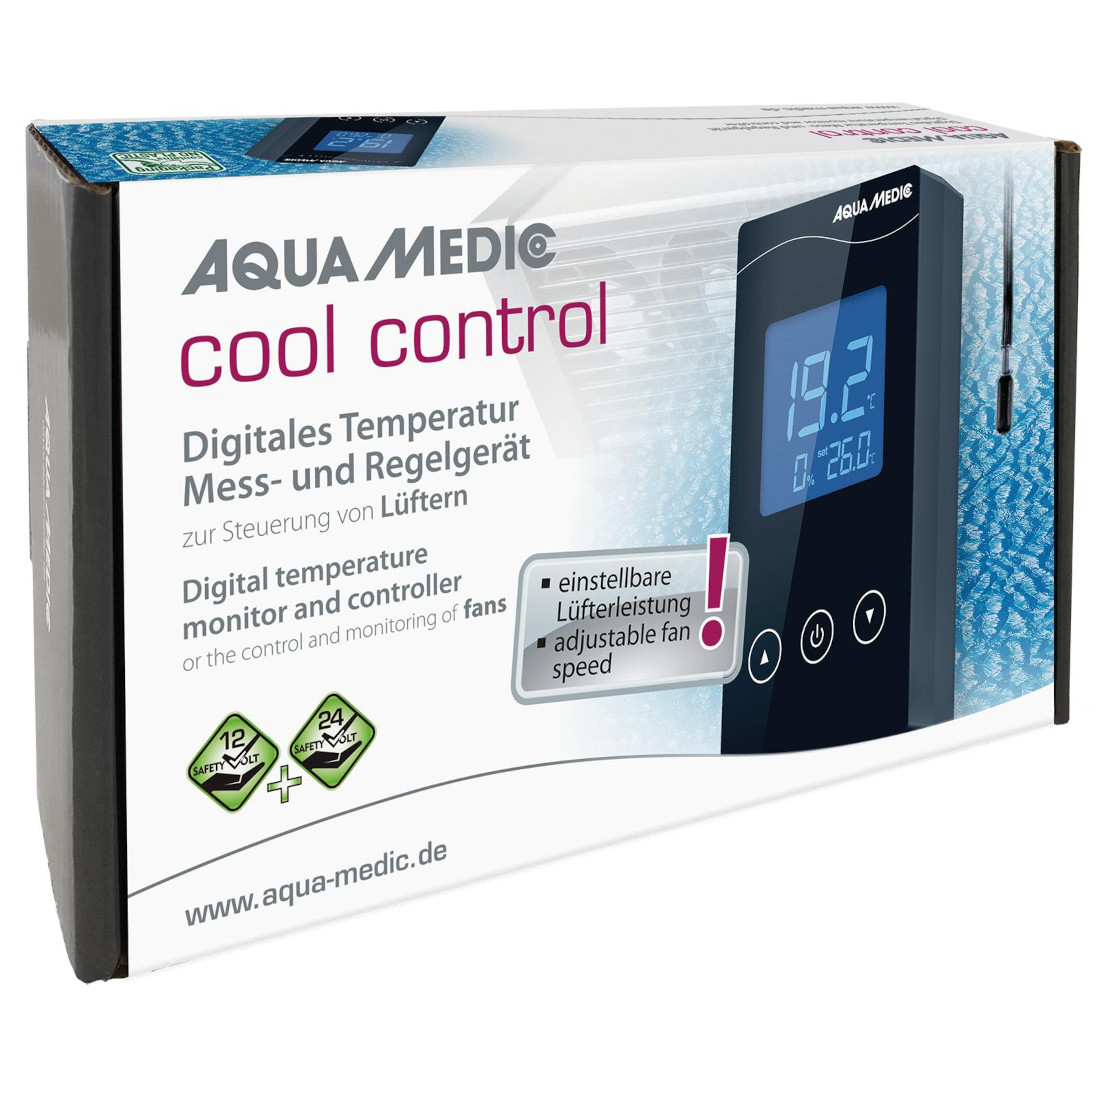 Aqua Medic cool control Verpackung